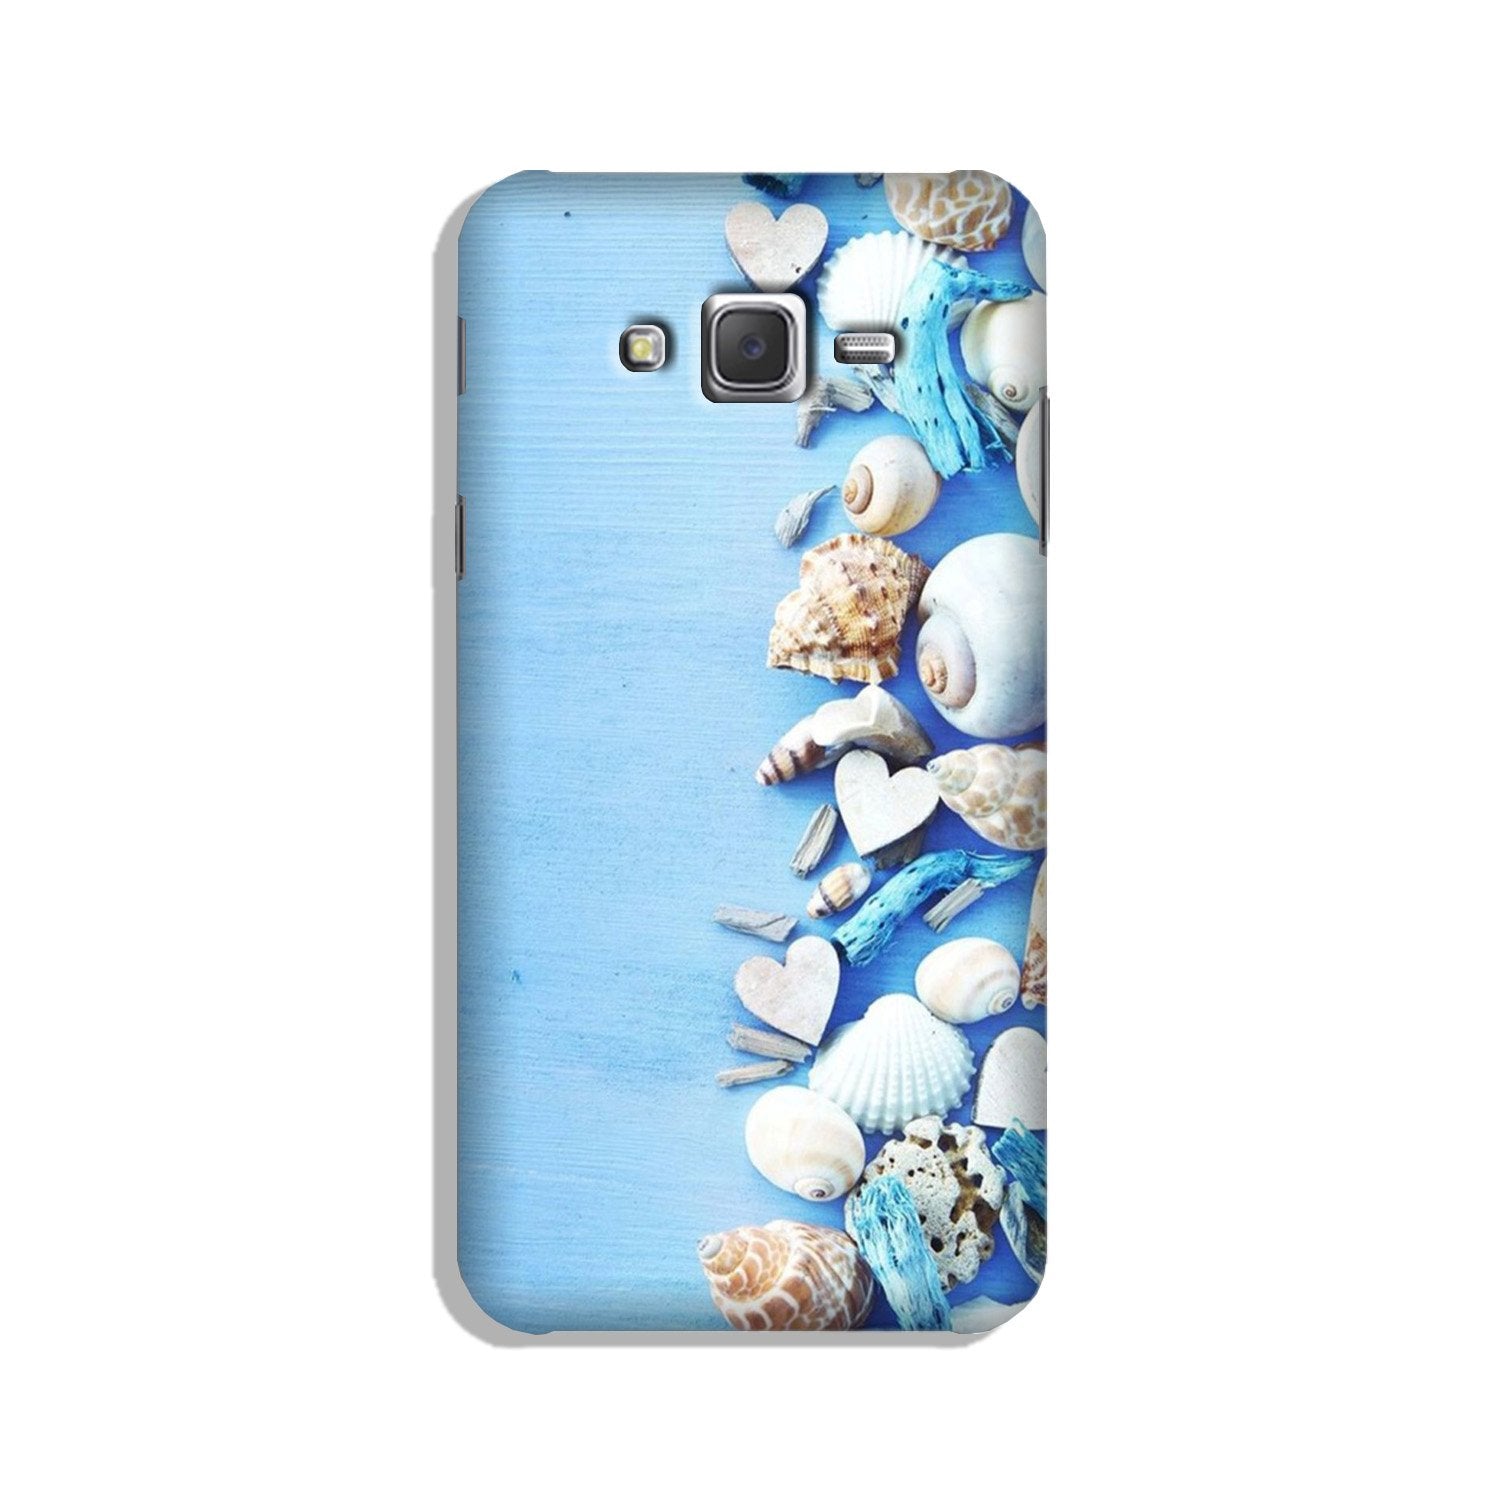 Sea Shells2 Case for Galaxy J5 (2015)